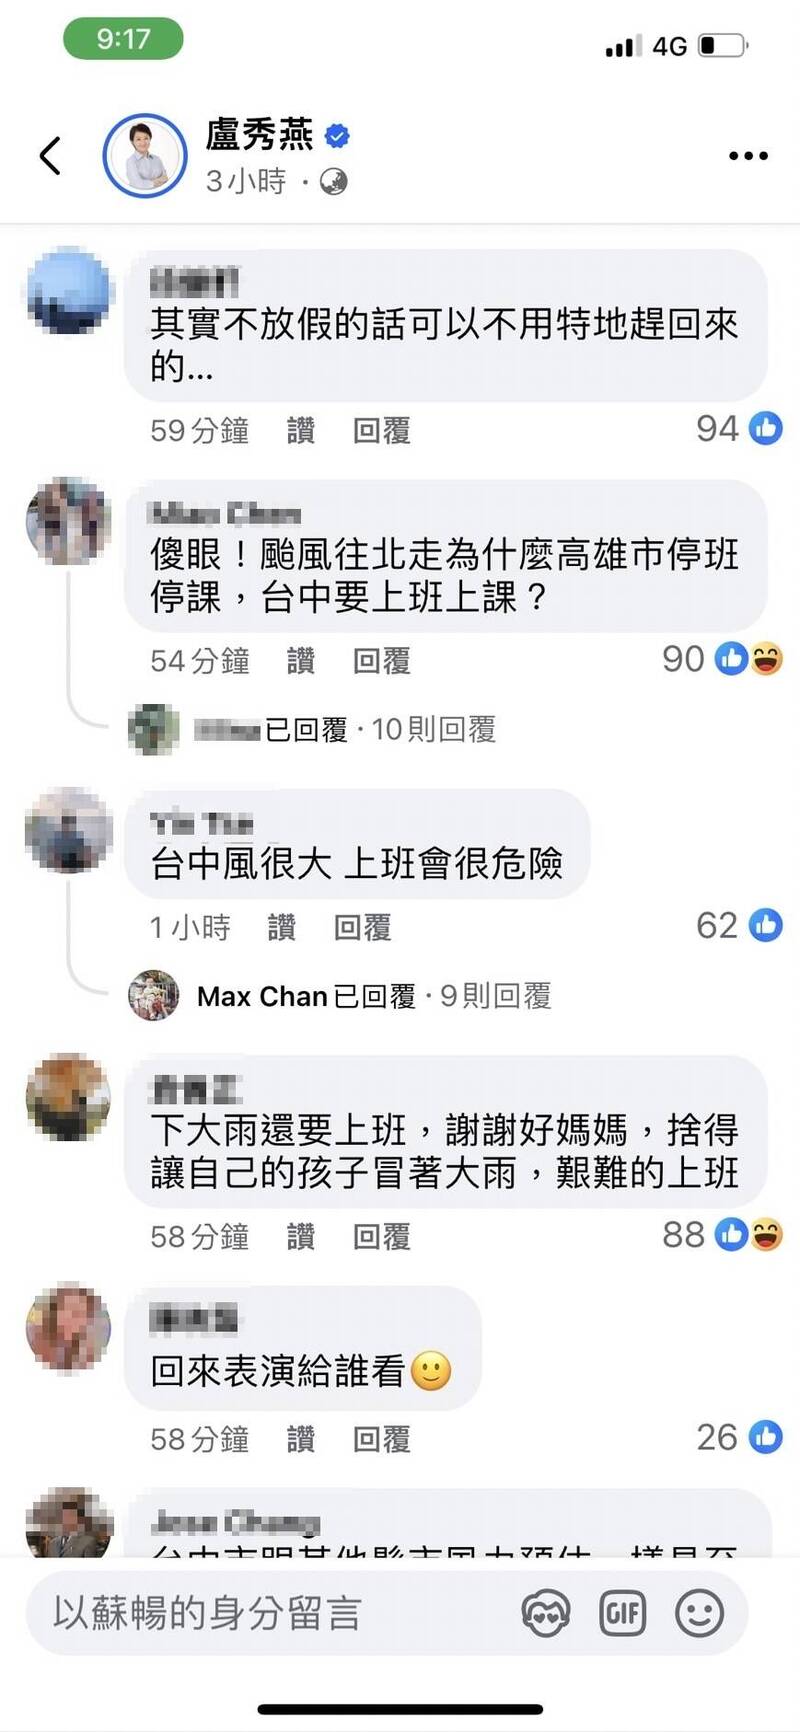 [新聞] 台中起風了卻沒颱風假 民眾湧盧秀燕臉書